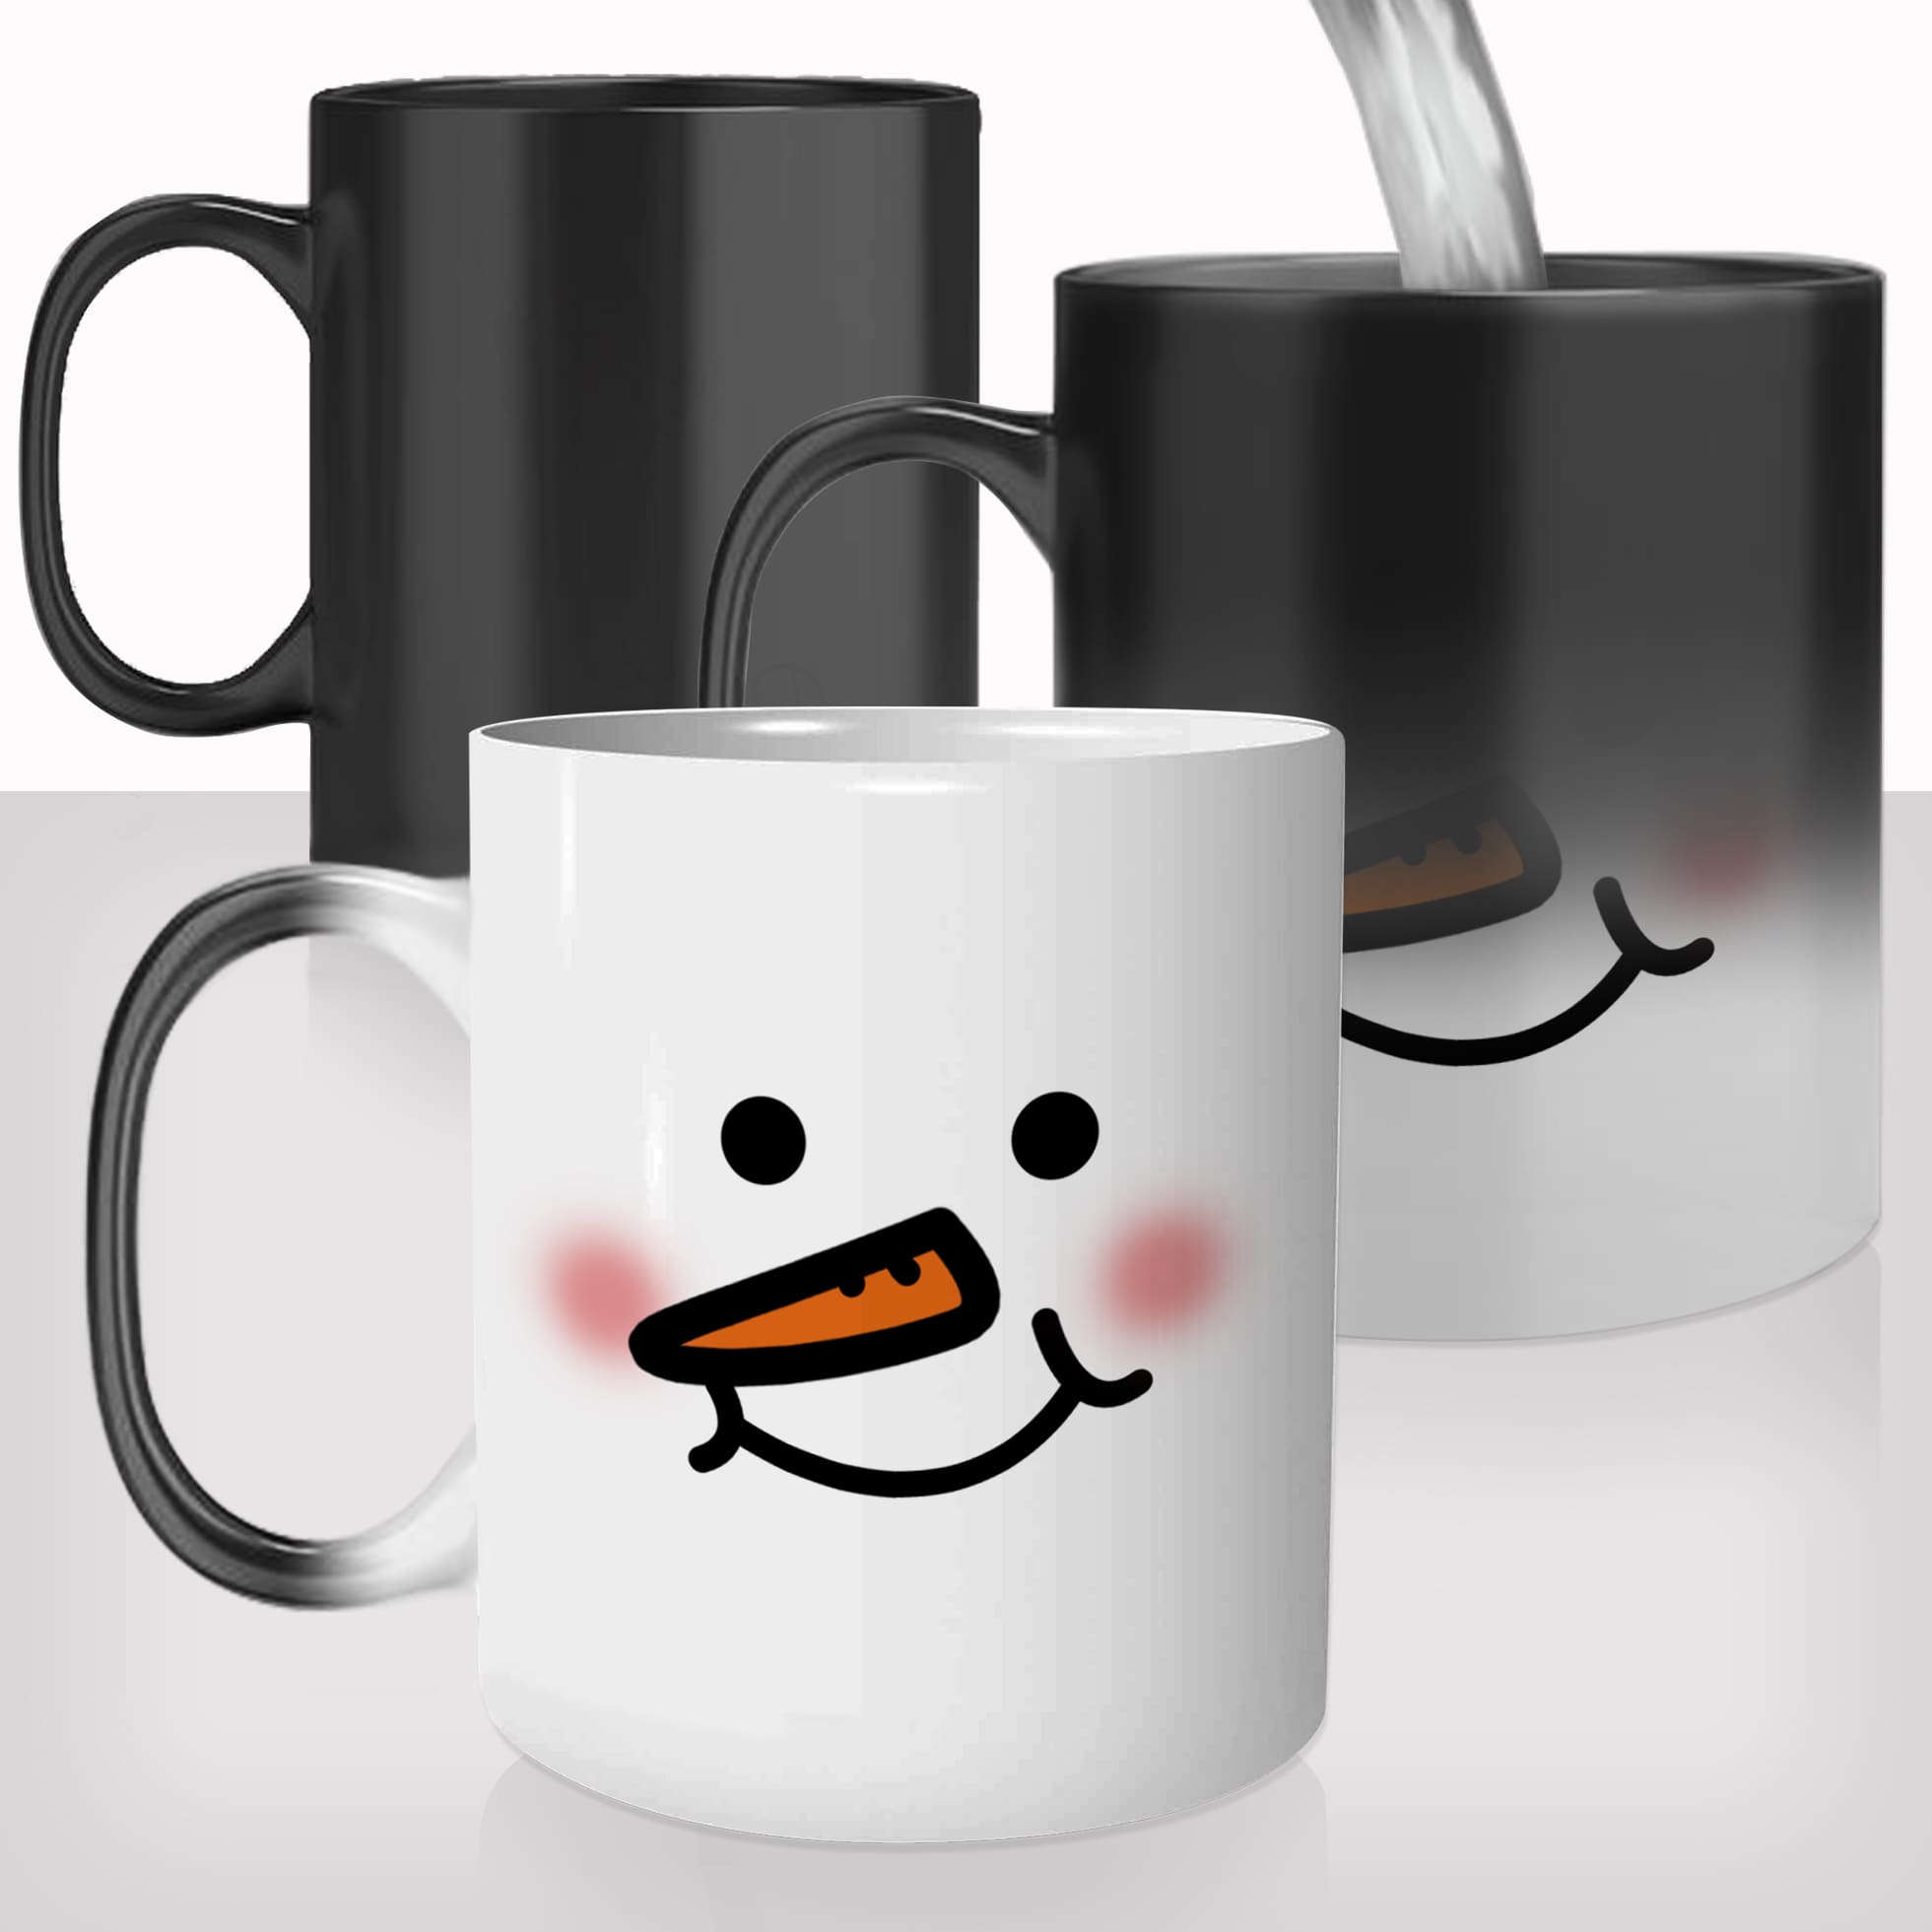 mug-magique-personnalisable-thermoreactif-tasse-thermique-chou-bonhomme-de-neige-mignon-noel-hiver-sourire-fun-idée-cadeau-original